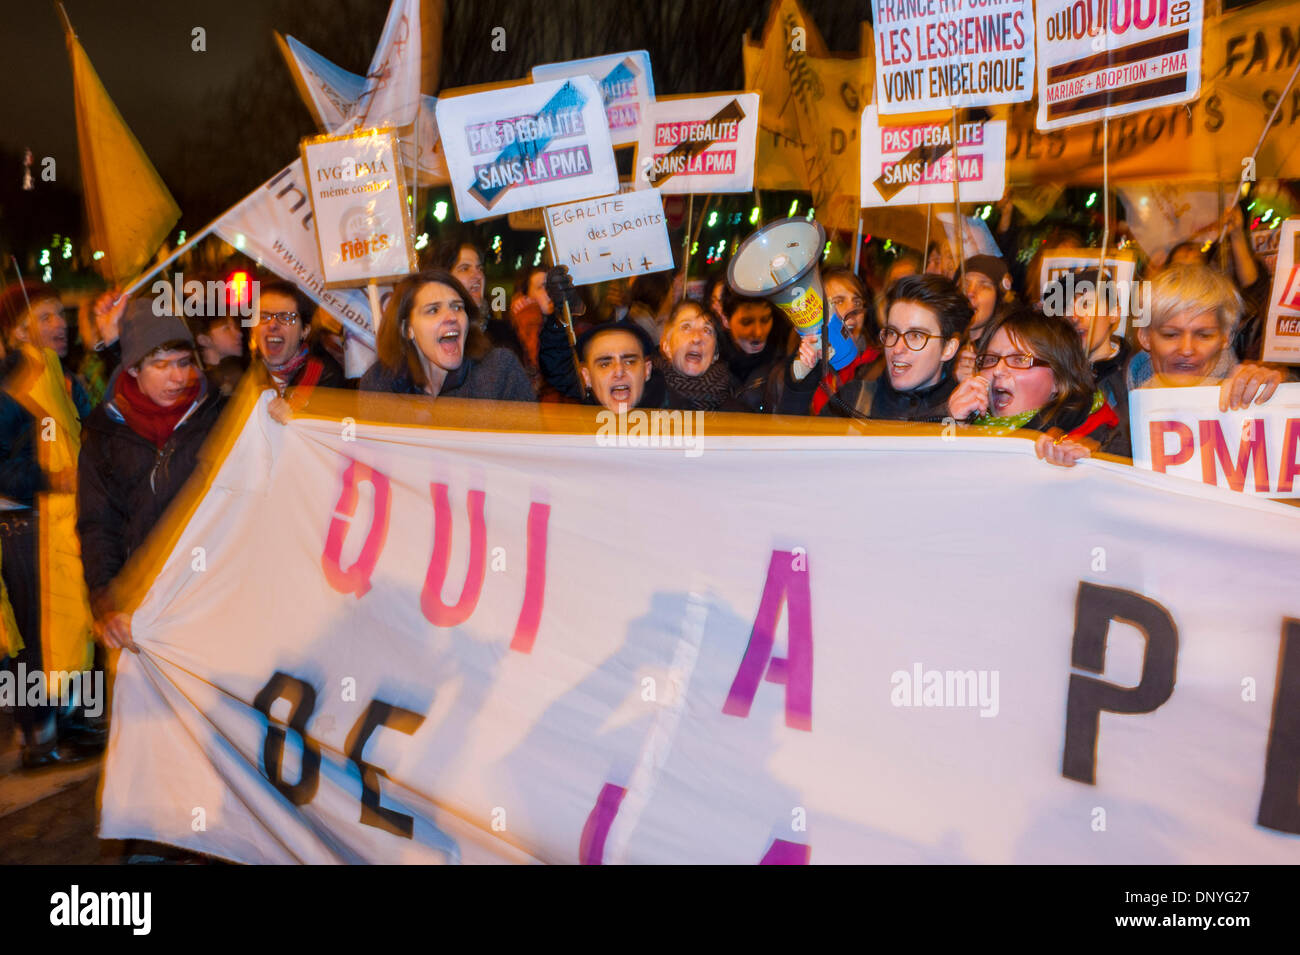 Paris, Frankreich. Öffentliche Demonstration, französische LGBT-Aktivismus-Gruppen, protestieren gegen die Weigerung der Regierung, M.A.P. (medizinisch assistierte Fortpflanzung) (P.M.A) zu legalisieren. (Künstliche Besamungsrechte) Frauen mit Protestzeichen, lgbt-Protest, weibliche Empowerment-Zeichen Stockfoto